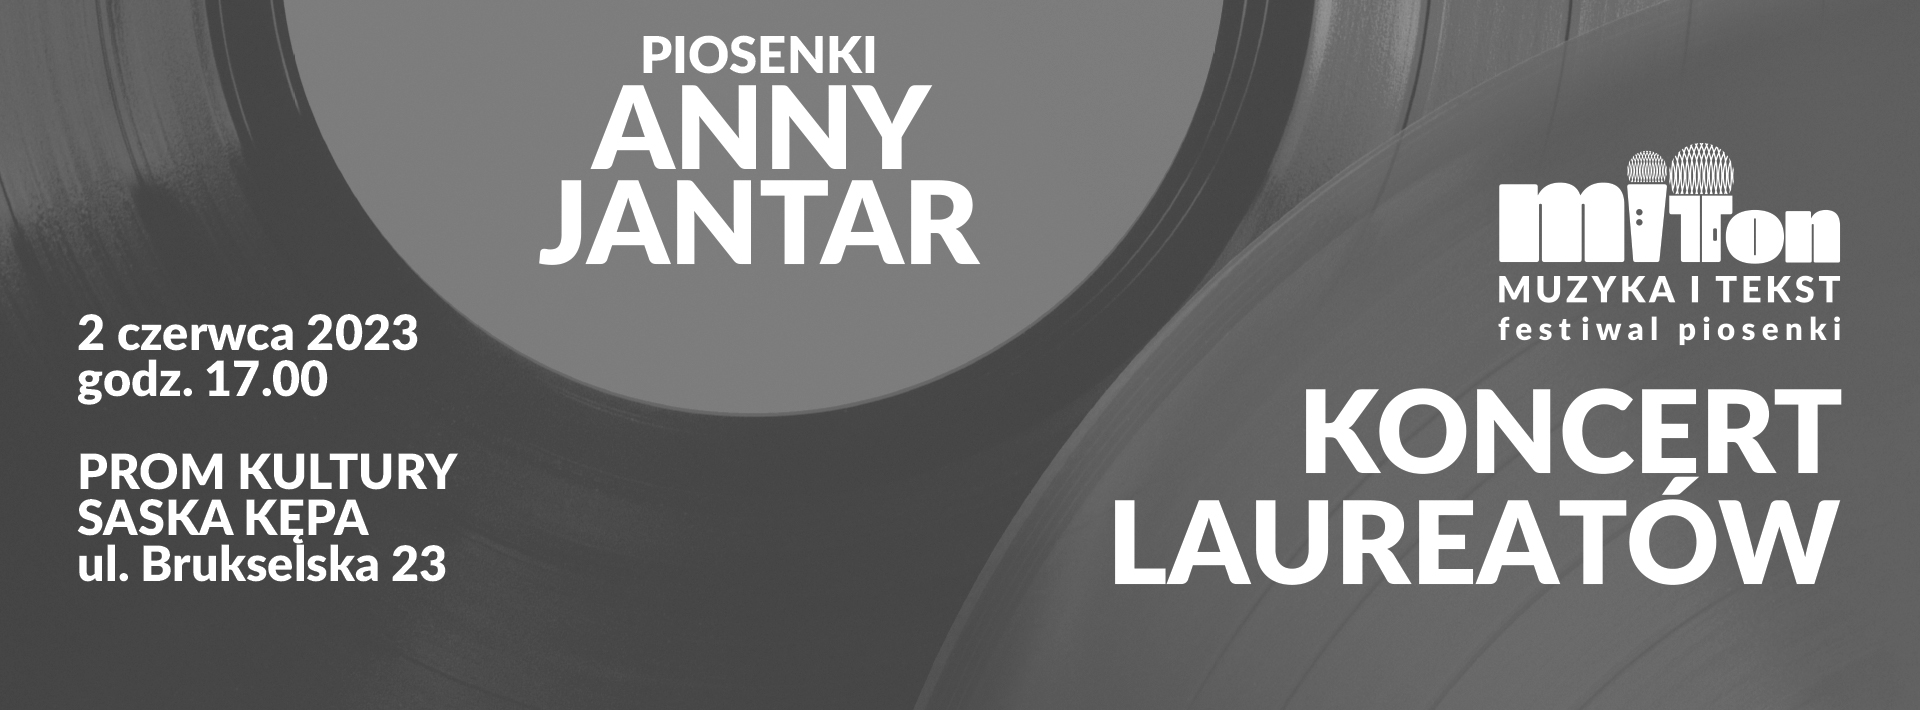 Grafika wydarzenia MIT TON - koncert laureatów Piosenki Anny Jantar